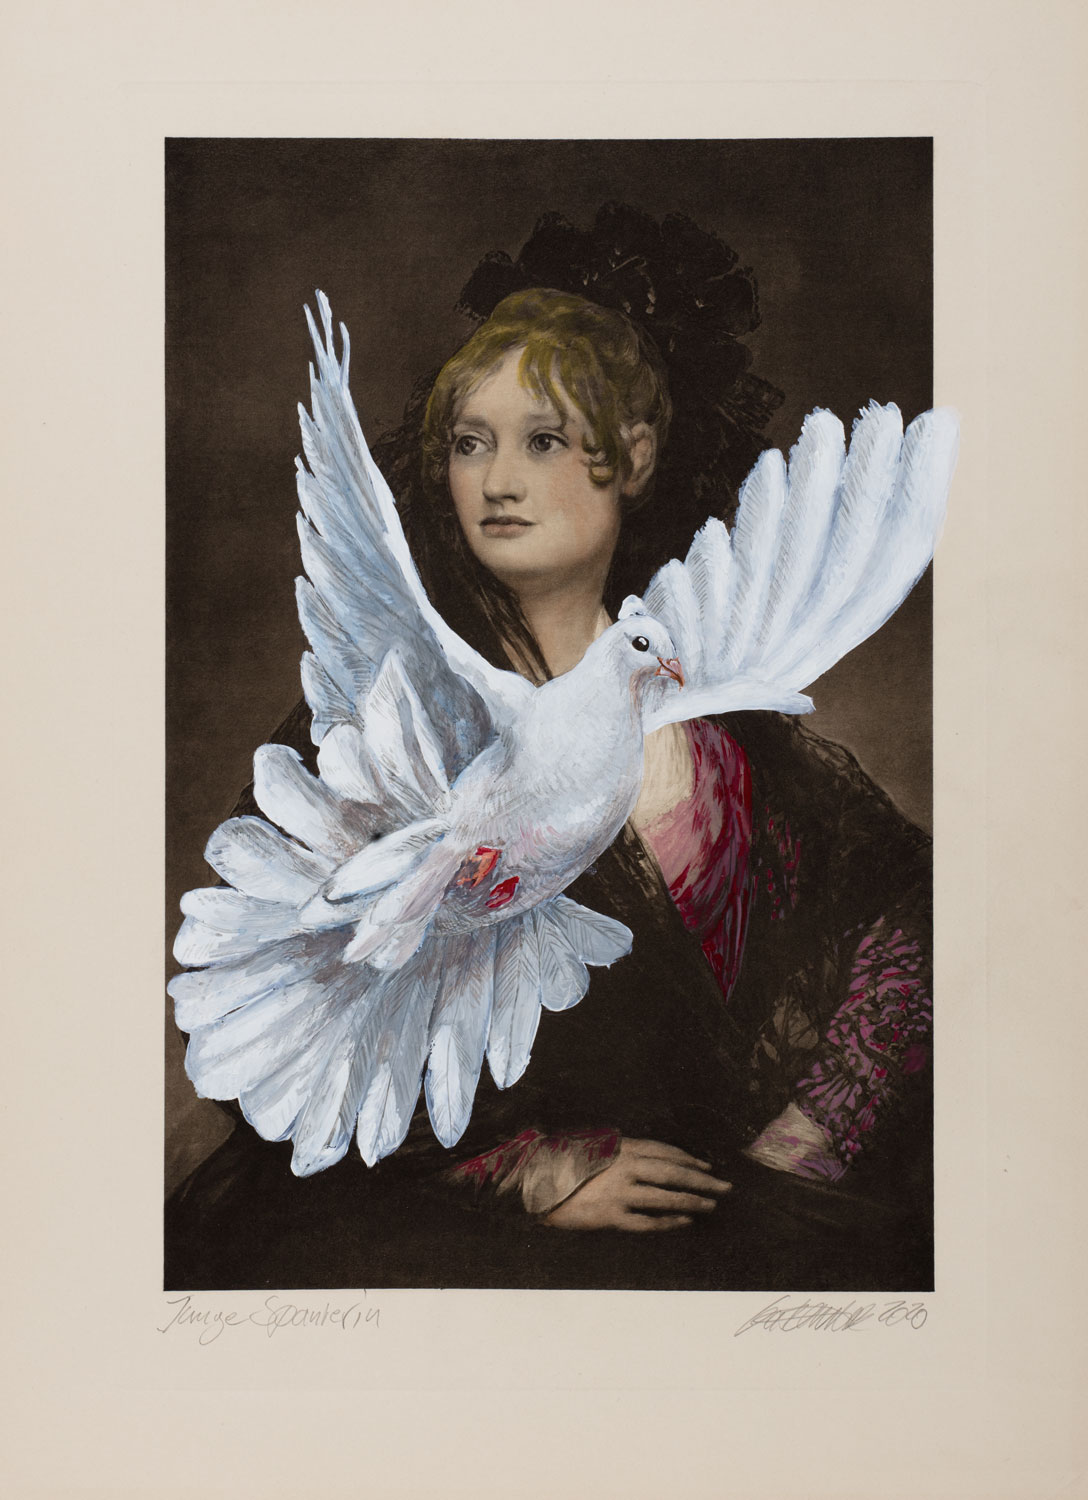 Gatzemeier Junge Spanierin ist eine Malereicollage mit einer jungen Frau und einer Taube.